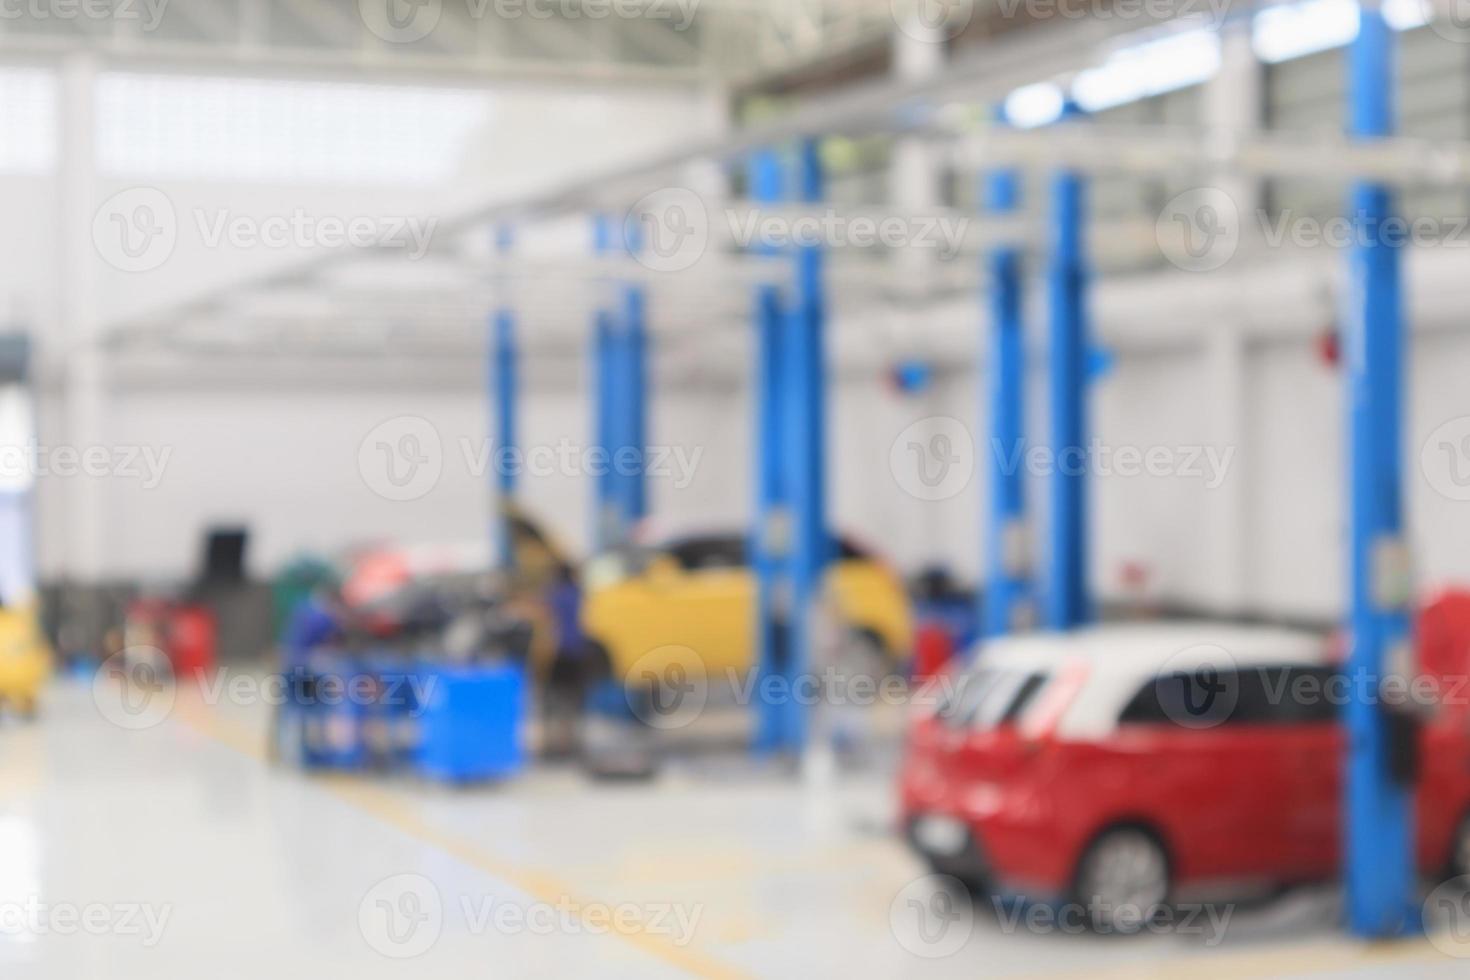 autoservicezentrum mit auto an der reparaturstation bokeh licht defokussierter unschärfehintergrund foto